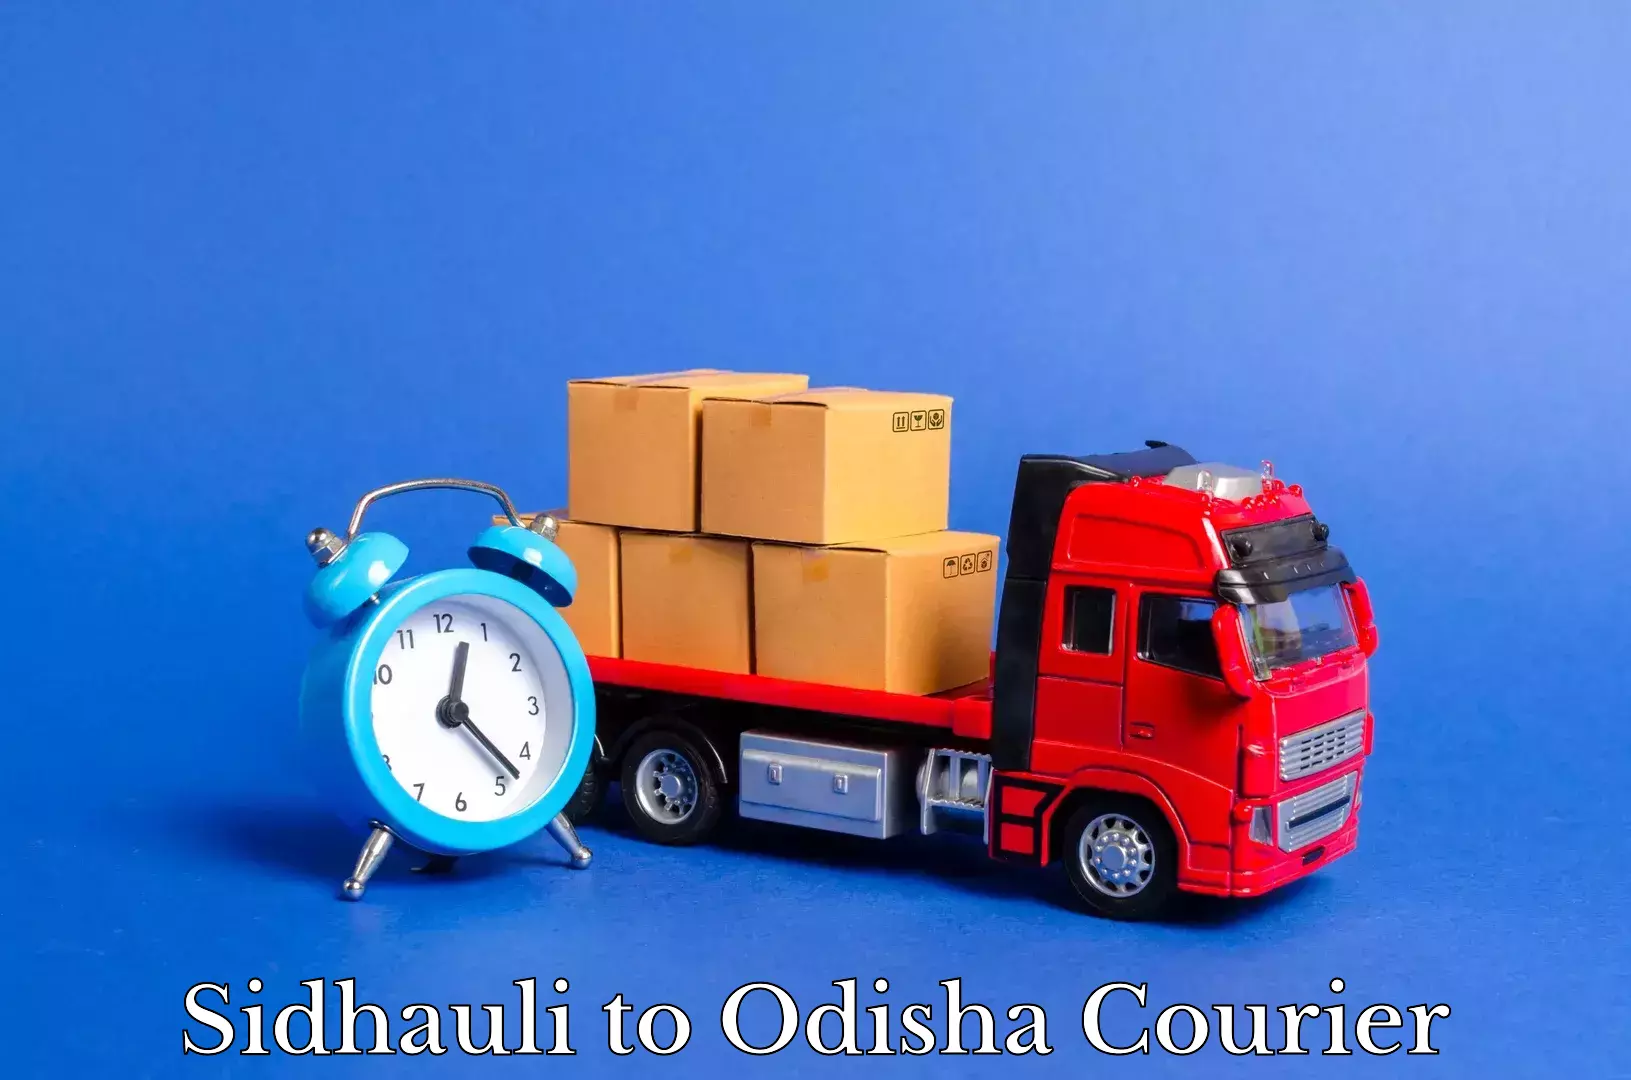 Home moving service Sidhauli to Odisha